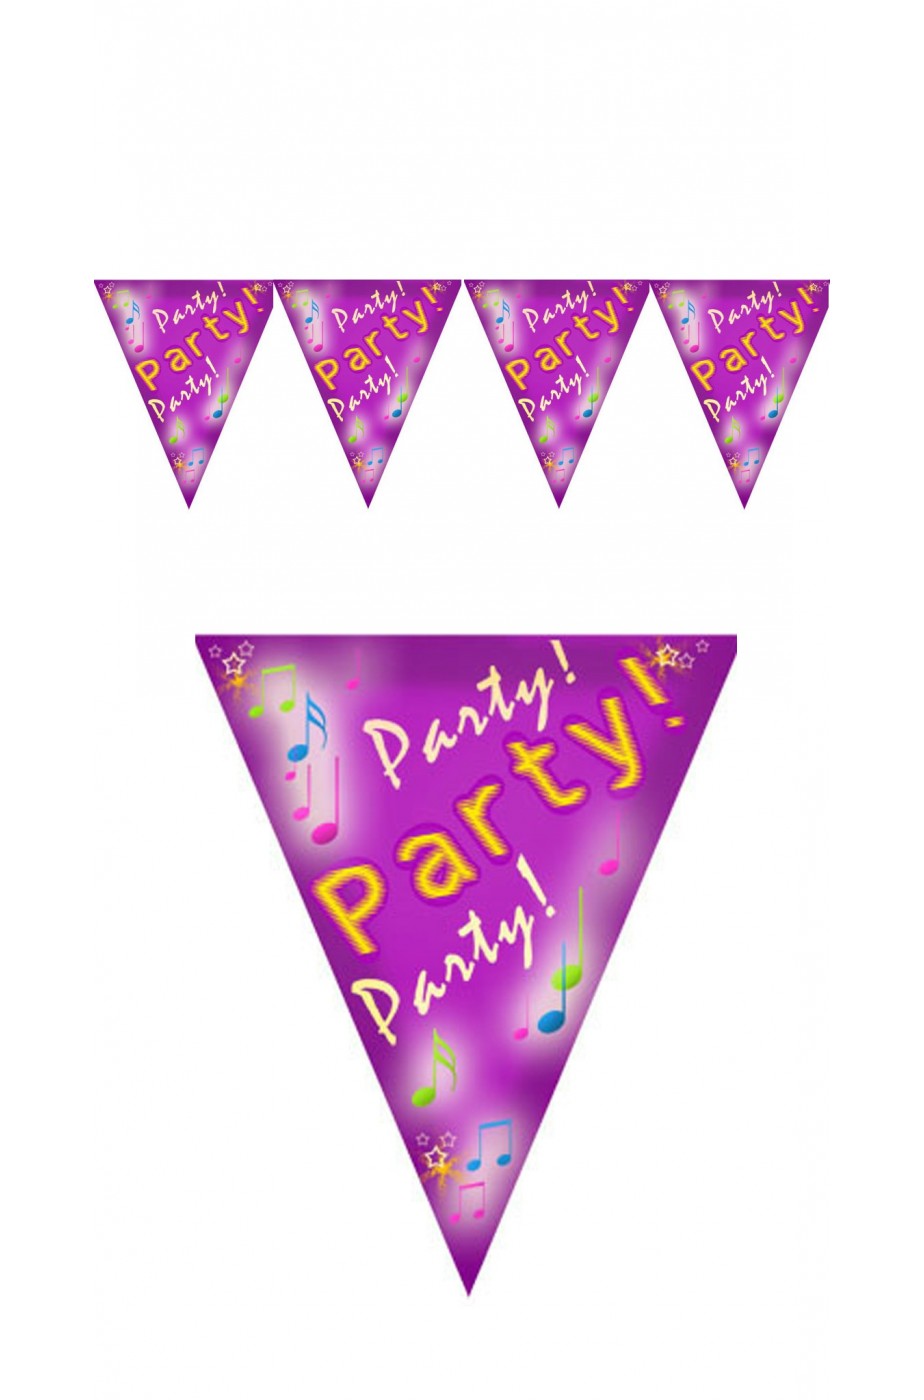 Festone decorativo party in nylon 4 bandierine 80cm*30cm